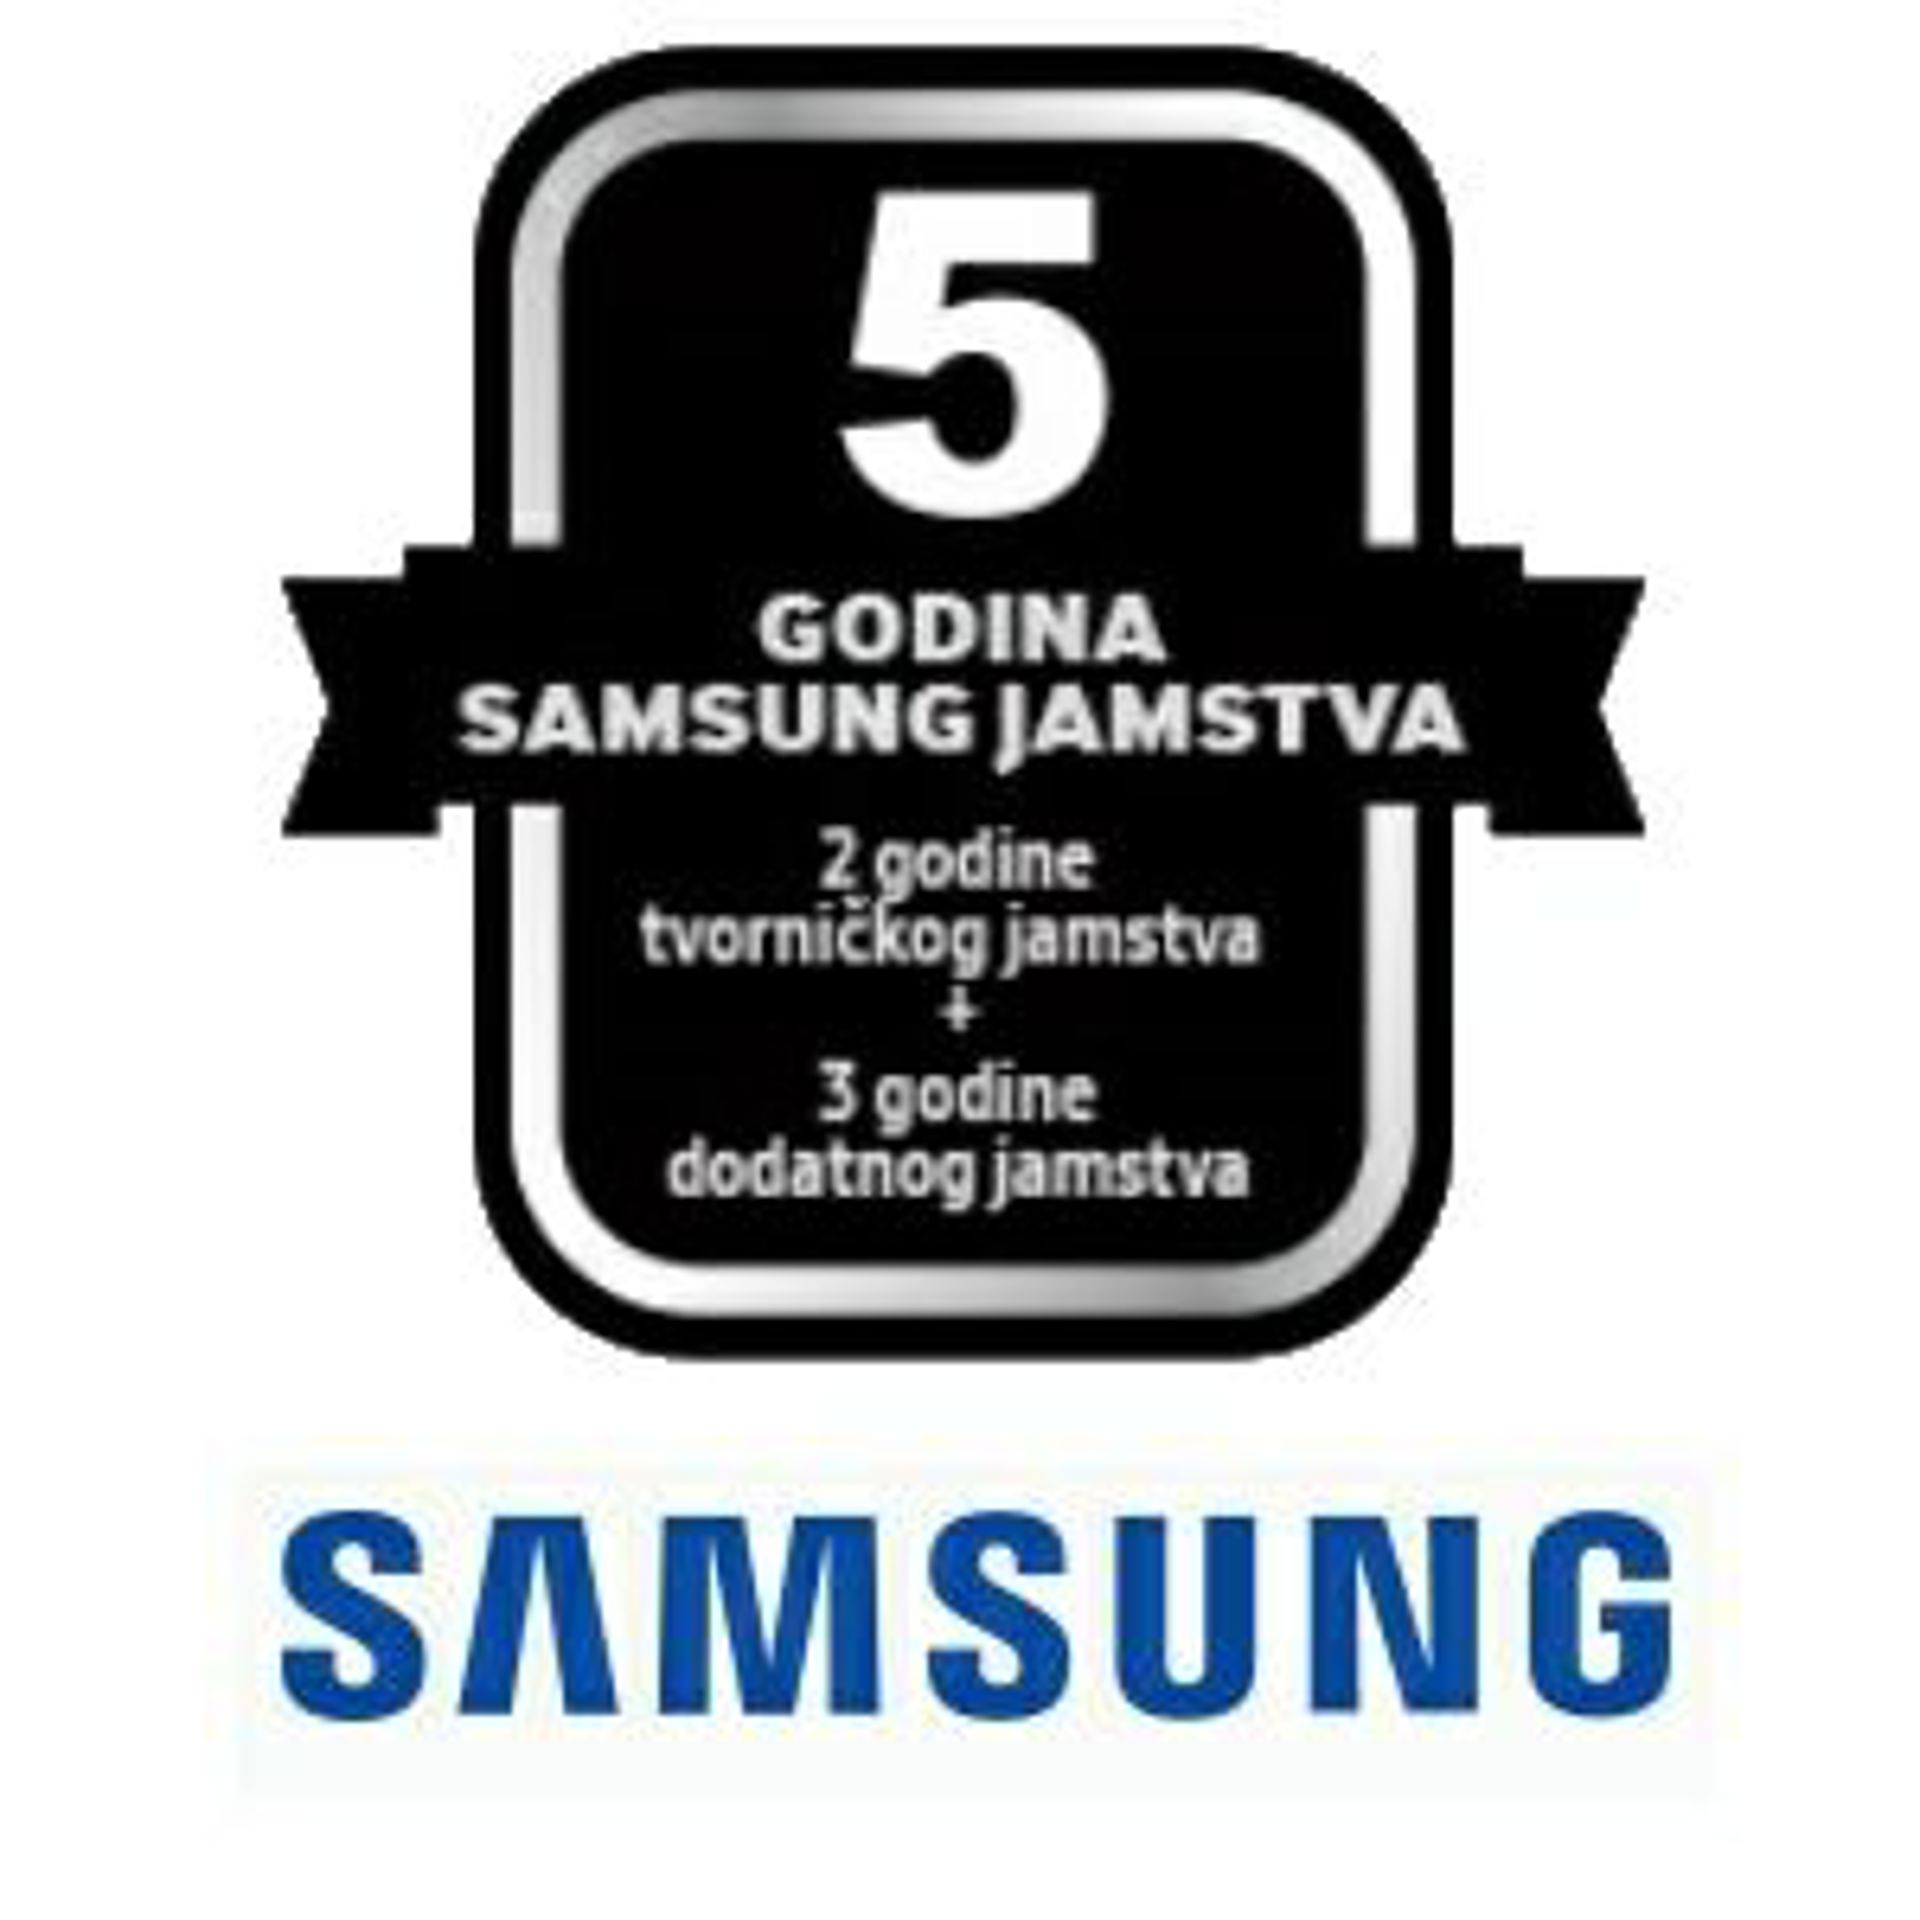 Samsung sušilice rublja i kombinirane perilice/sušilice rublja sa 2 godine tvorničkog jamstva + 3 godine dodatnog jamstva